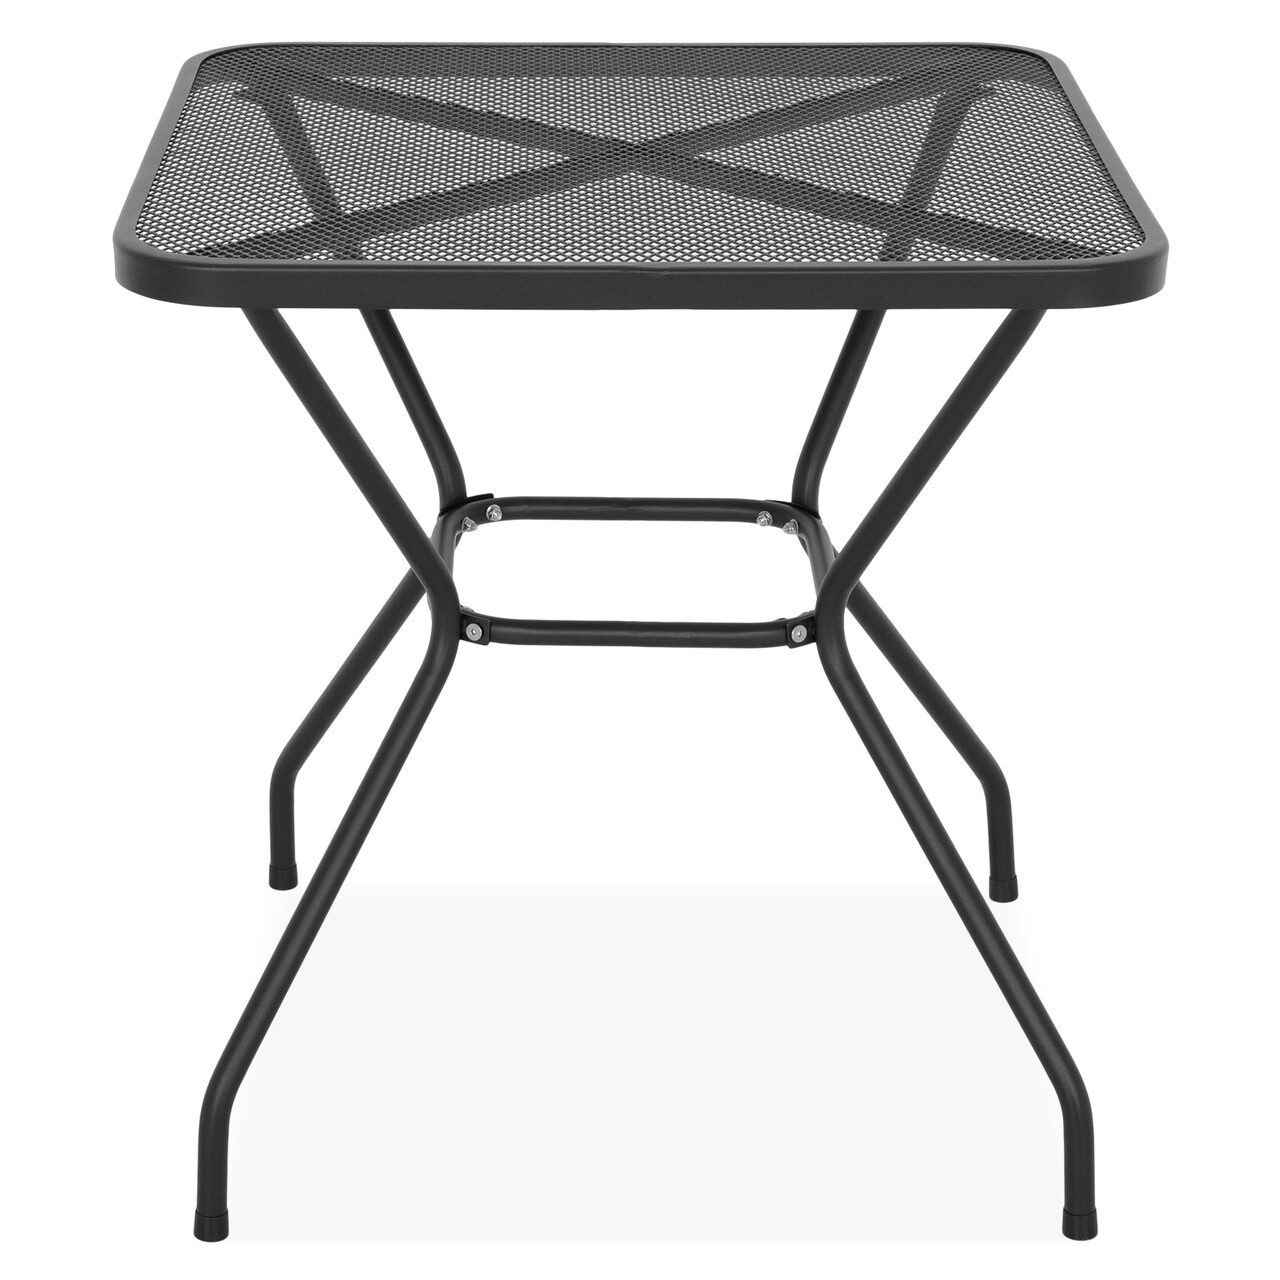 Berlin Asztal, L.70 l.70 H.72 cm, acél, fekete